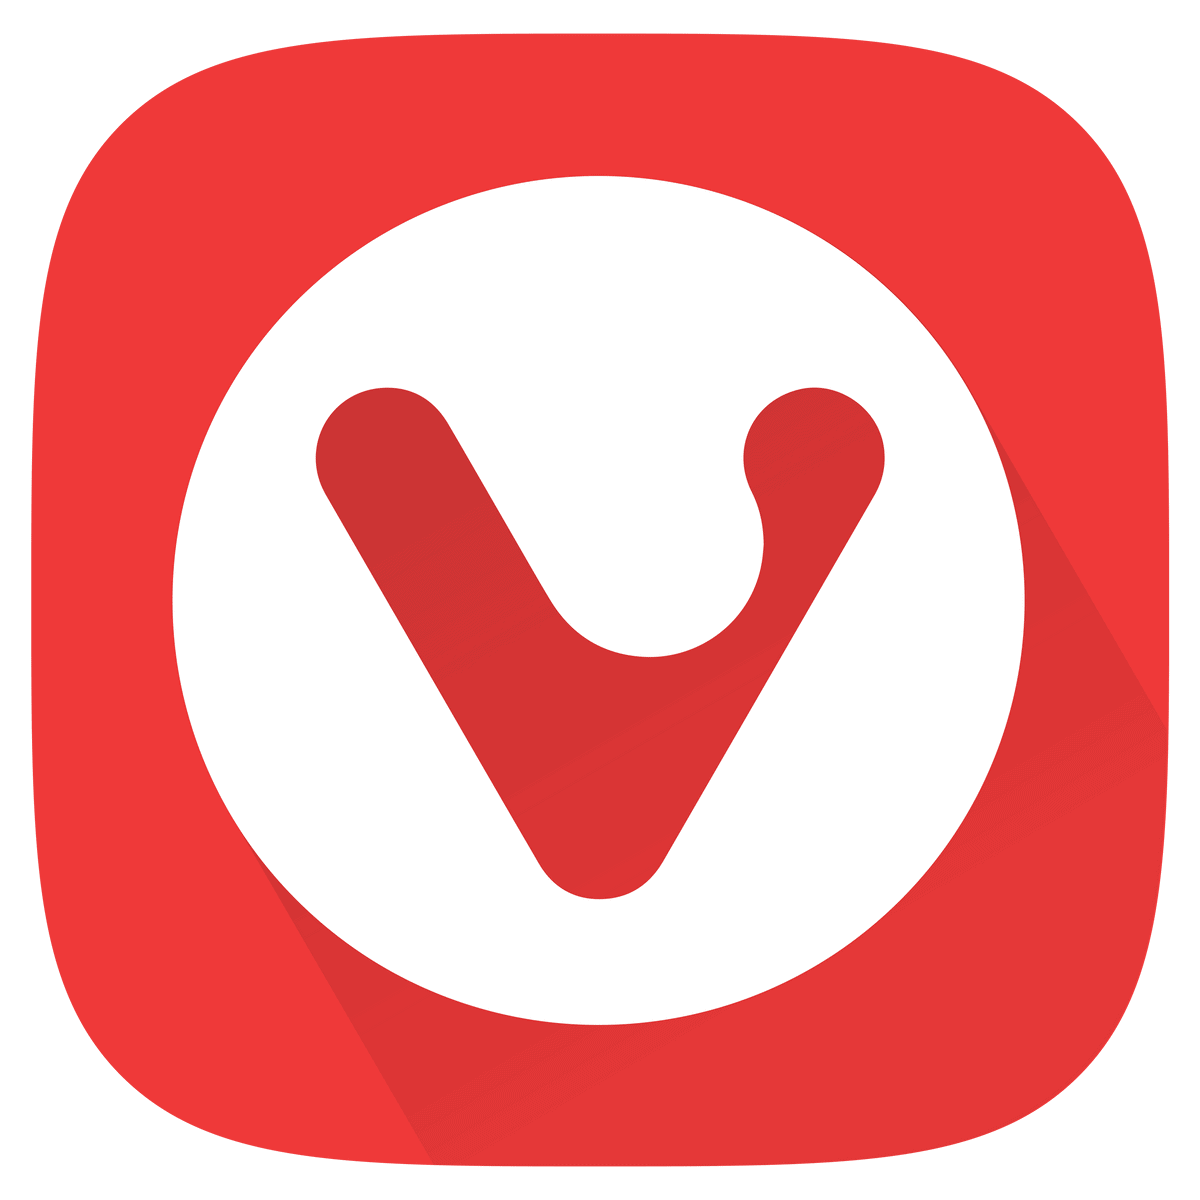 تم إطلاق Vivaldi 5.0 مع تحسينات رئيسية لعلامات التبويب على نظام Android ، لوحة الترجمة على سطح المكتب